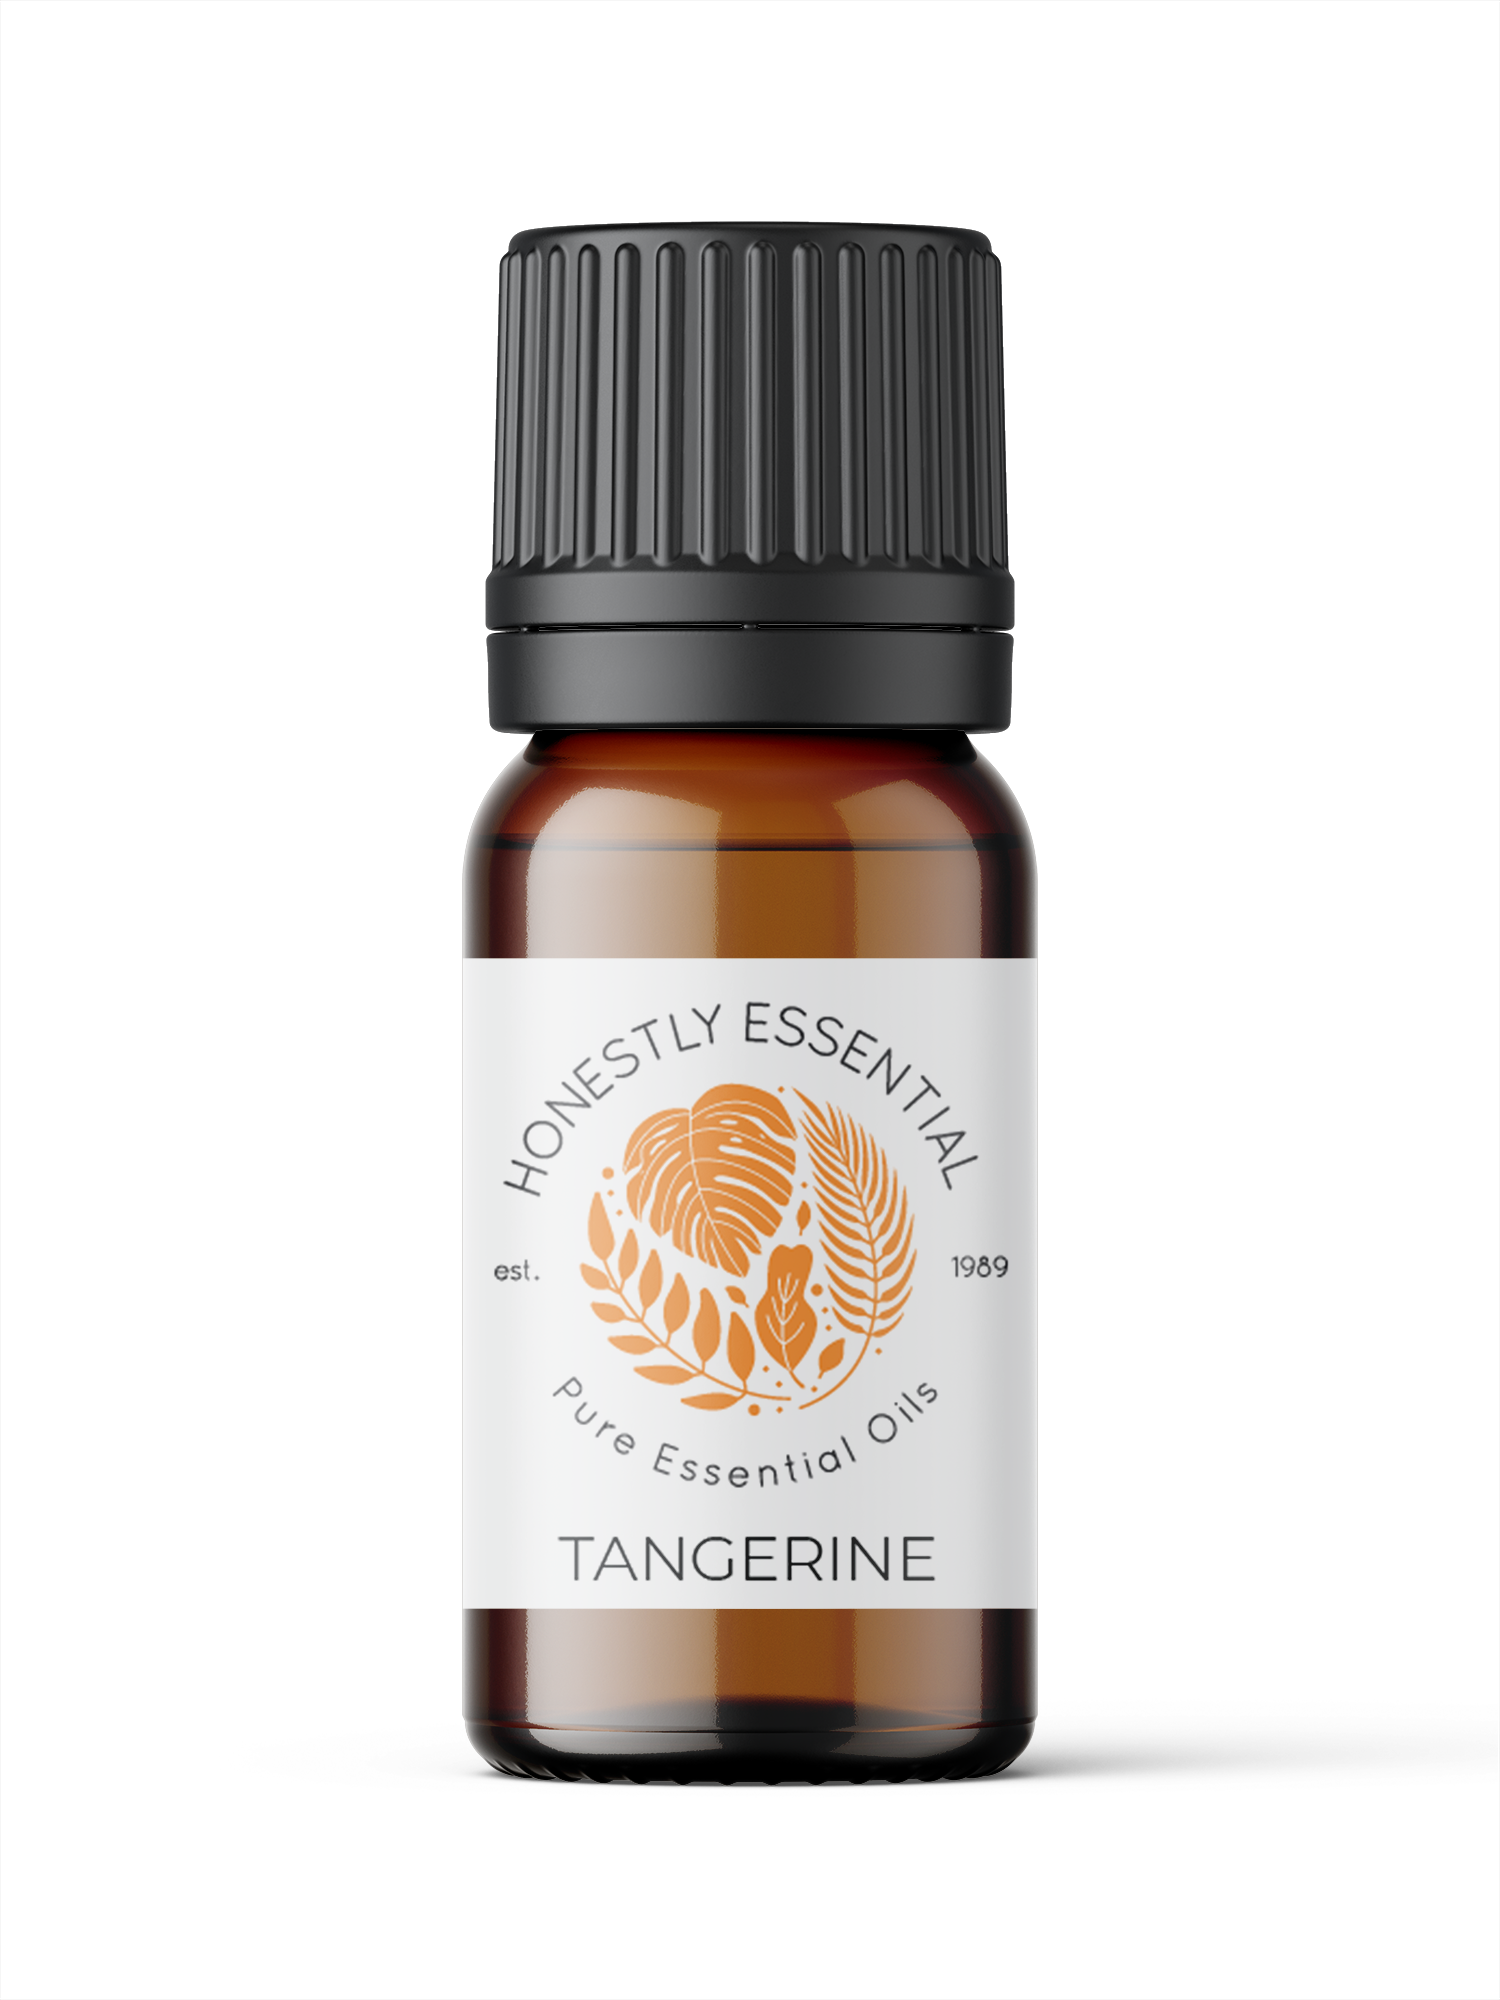 Tangerine Essential Oil - Essential Oils | Honestly Essential Oils anxiety, child, citrus, citrus essential oil, digestion, essential, kid, kid safe, kosher, oil, safe, tangerine, vegan